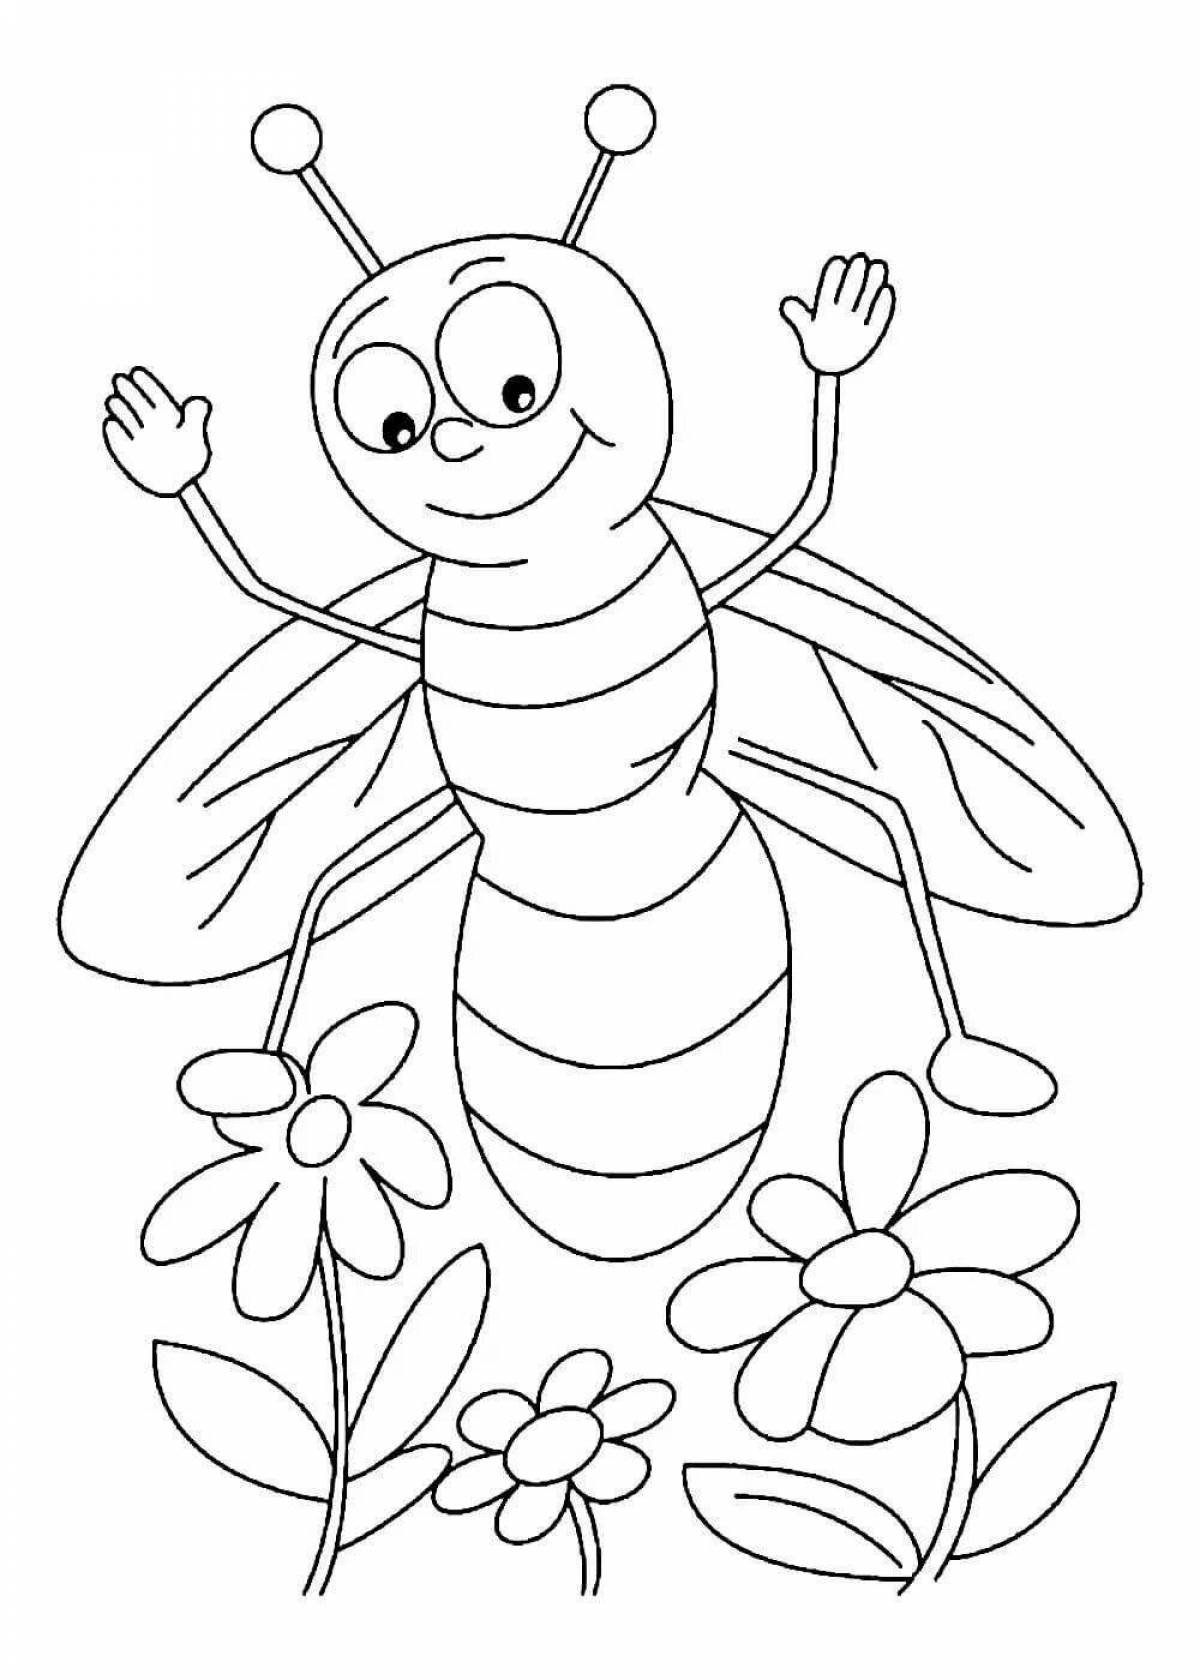 Пчелка раскраска распечатать. Насекомые. Раскраска. Пчела раскраска. Пчела раскраска для детей. Насекомые раскраска для детей.